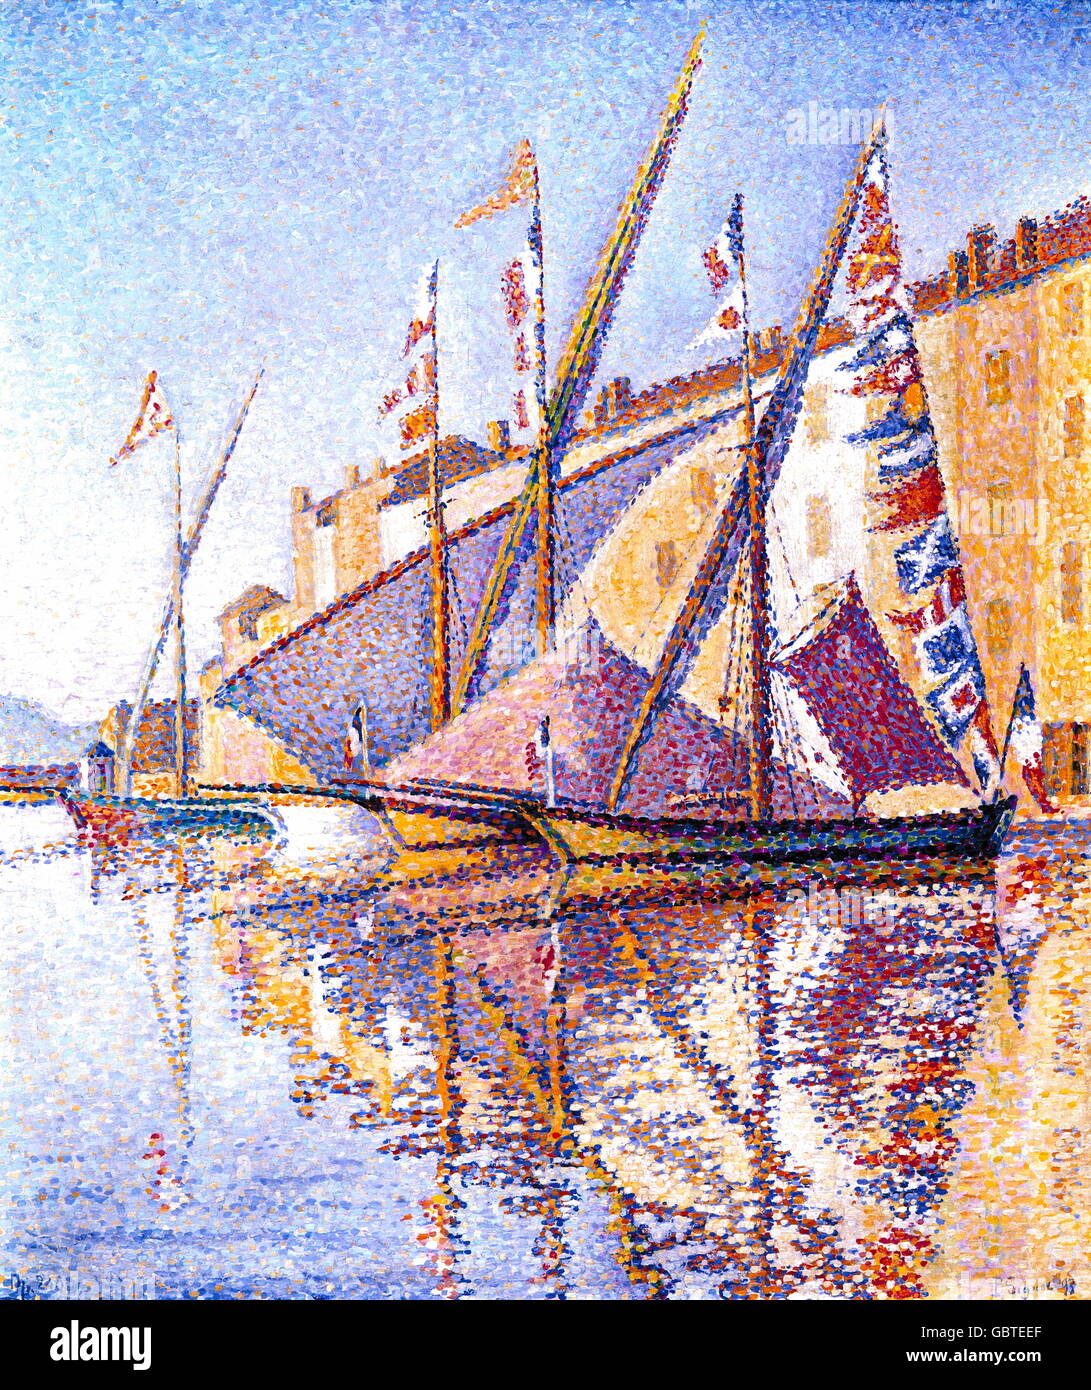 Bildende Kunst, Signac, Paul (1863-1935), Malerei, "Segelboote in St. Tropez Harbour", Öl auf Leinwand, 46 x 56 cm, 1893, Wuppertal, Von-der-Heydt-Museum, Stockfoto